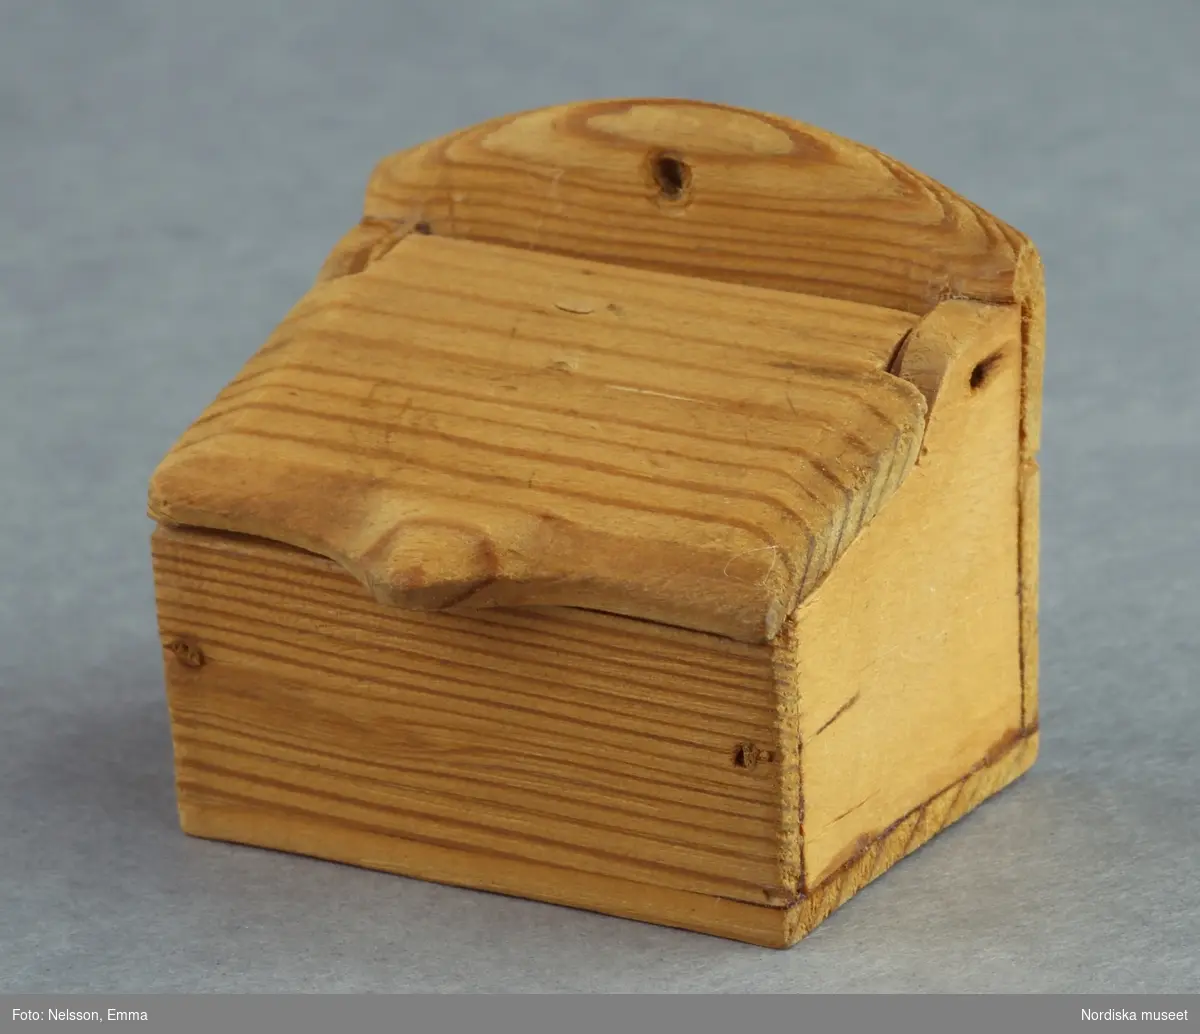 Inventering Sesam 1996-1999:
L 3,9 cm
B 2,8 cm
H 3,7 cm
Mjölkar till dockskåp, av obehandlat trä, rektangulär låda med öppningsbart snedlock och uppskjutande baksida. 
Tillhör dockskåp inv 164.570. Brukad av givarinnan, född 1886.
Leif Wallin nov 1997